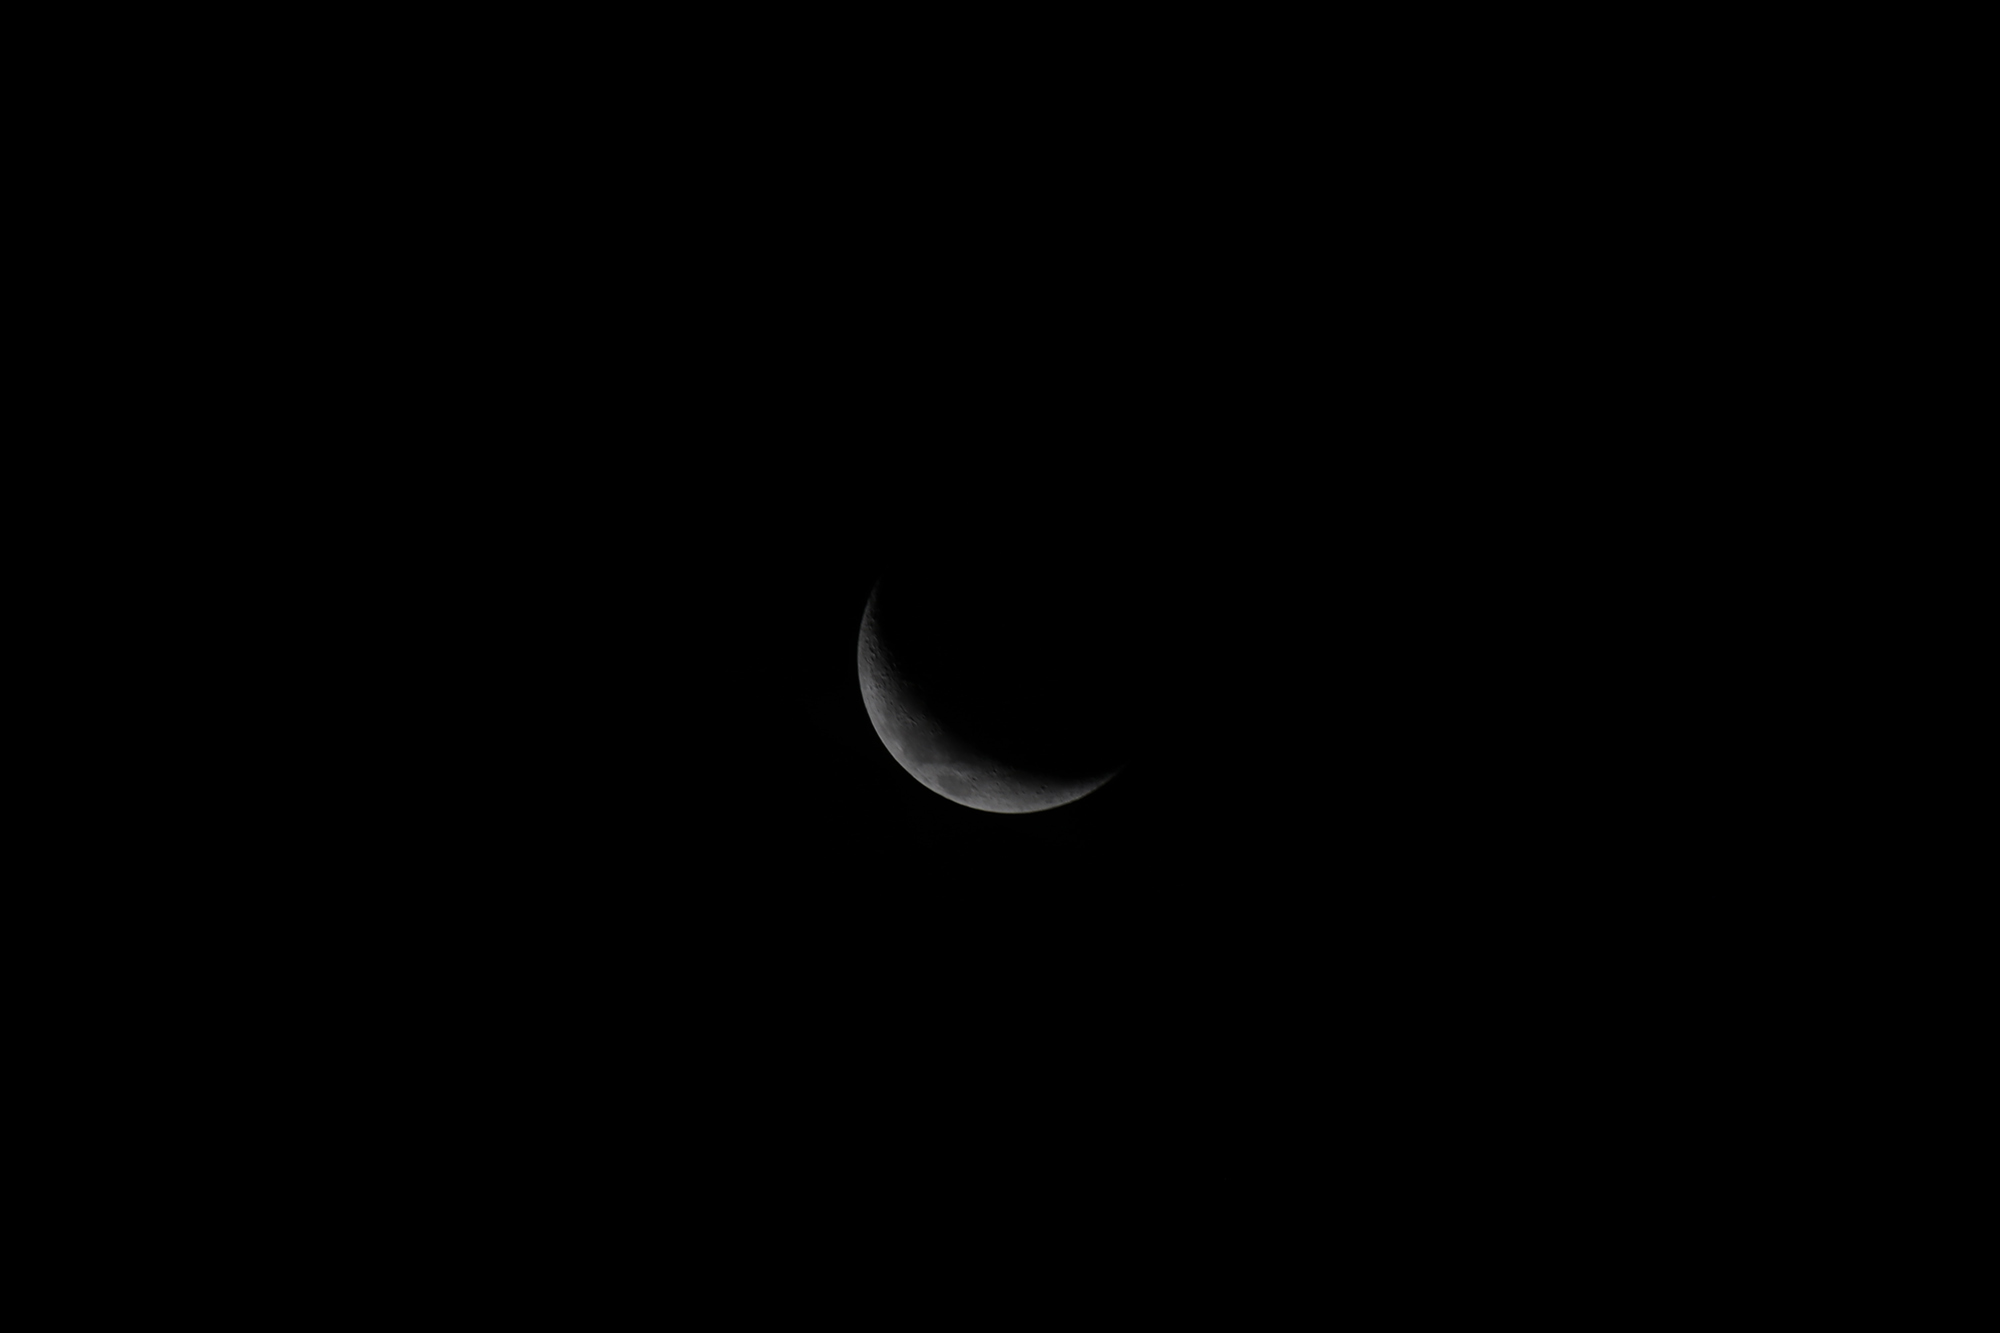 Pha mặt mũi trăng - Wanning Cresent Moon